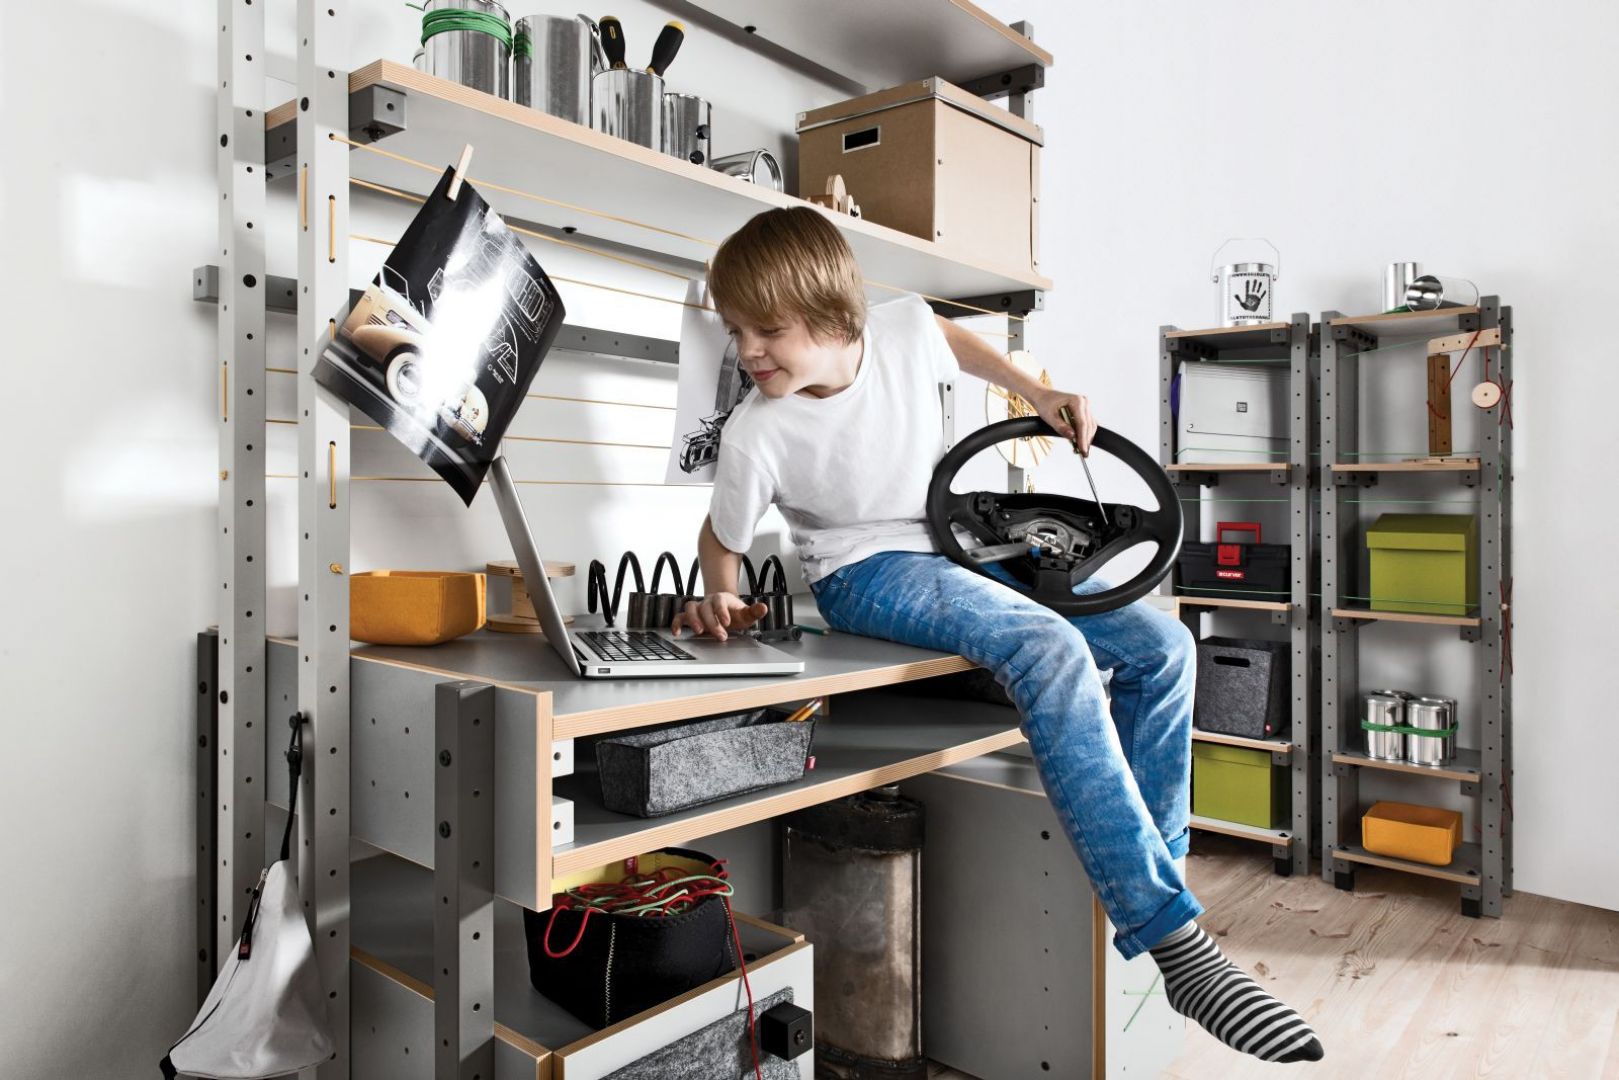 Smart by Vox to biurko, które dziecko może samodzielnie złożyć. Fot. Vox